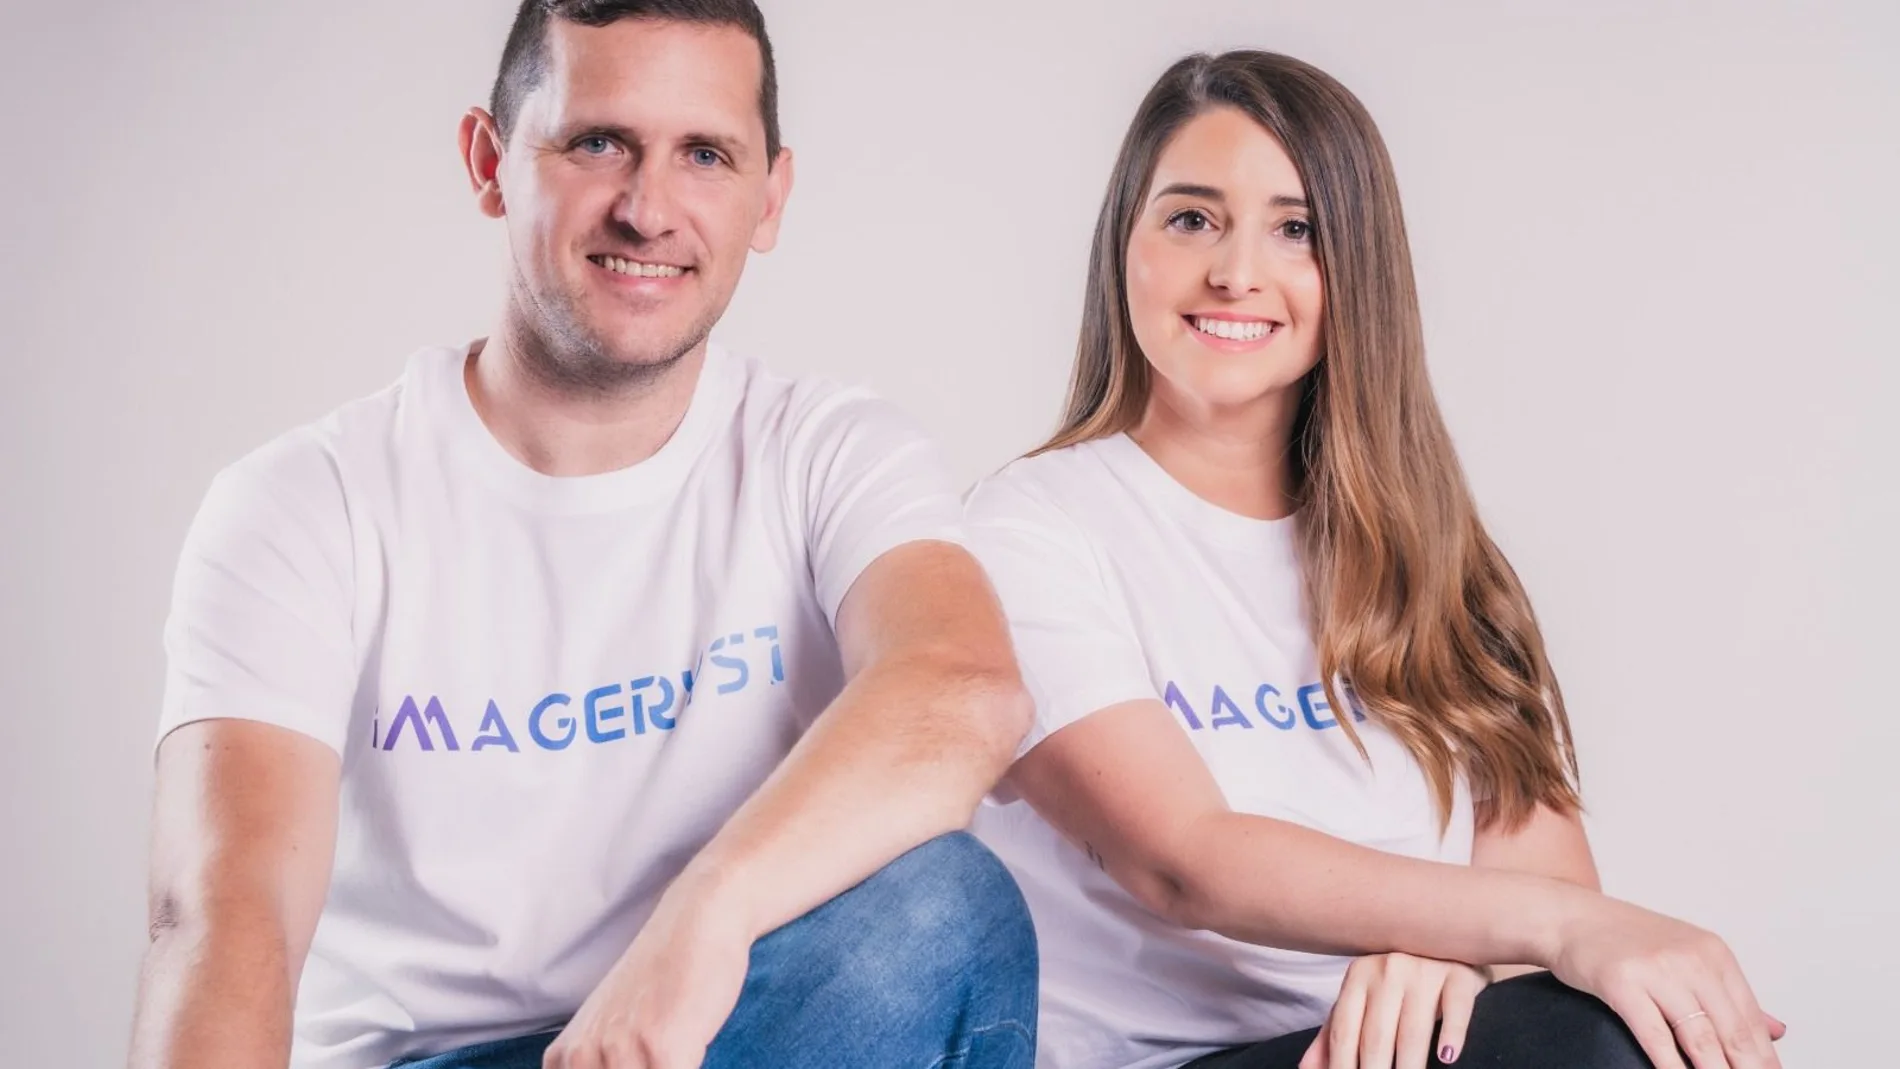 Ángela del Carmen, CEO de Imageryst , y José Crespo CTO de la compañía